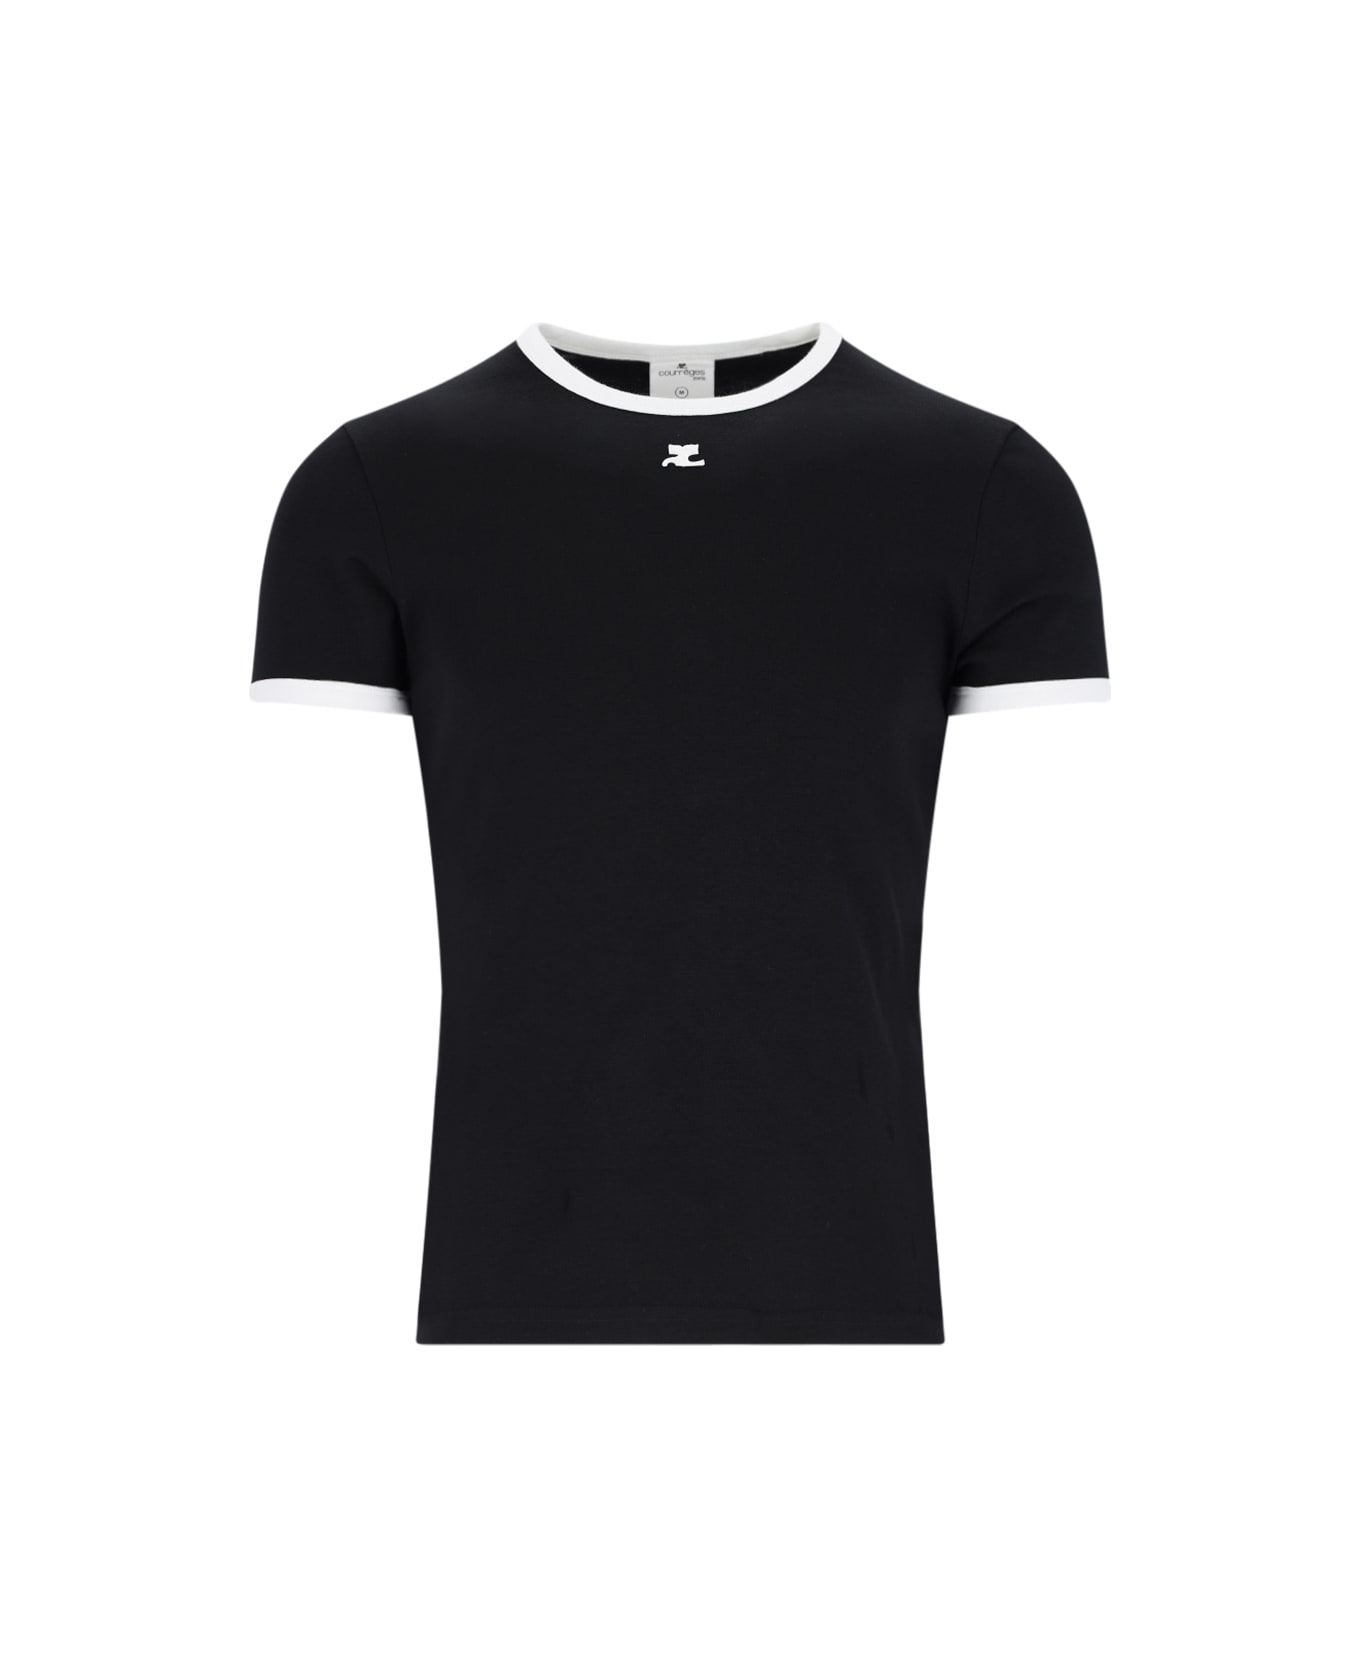 Courrèges 'contrast' T-shirt - Black  